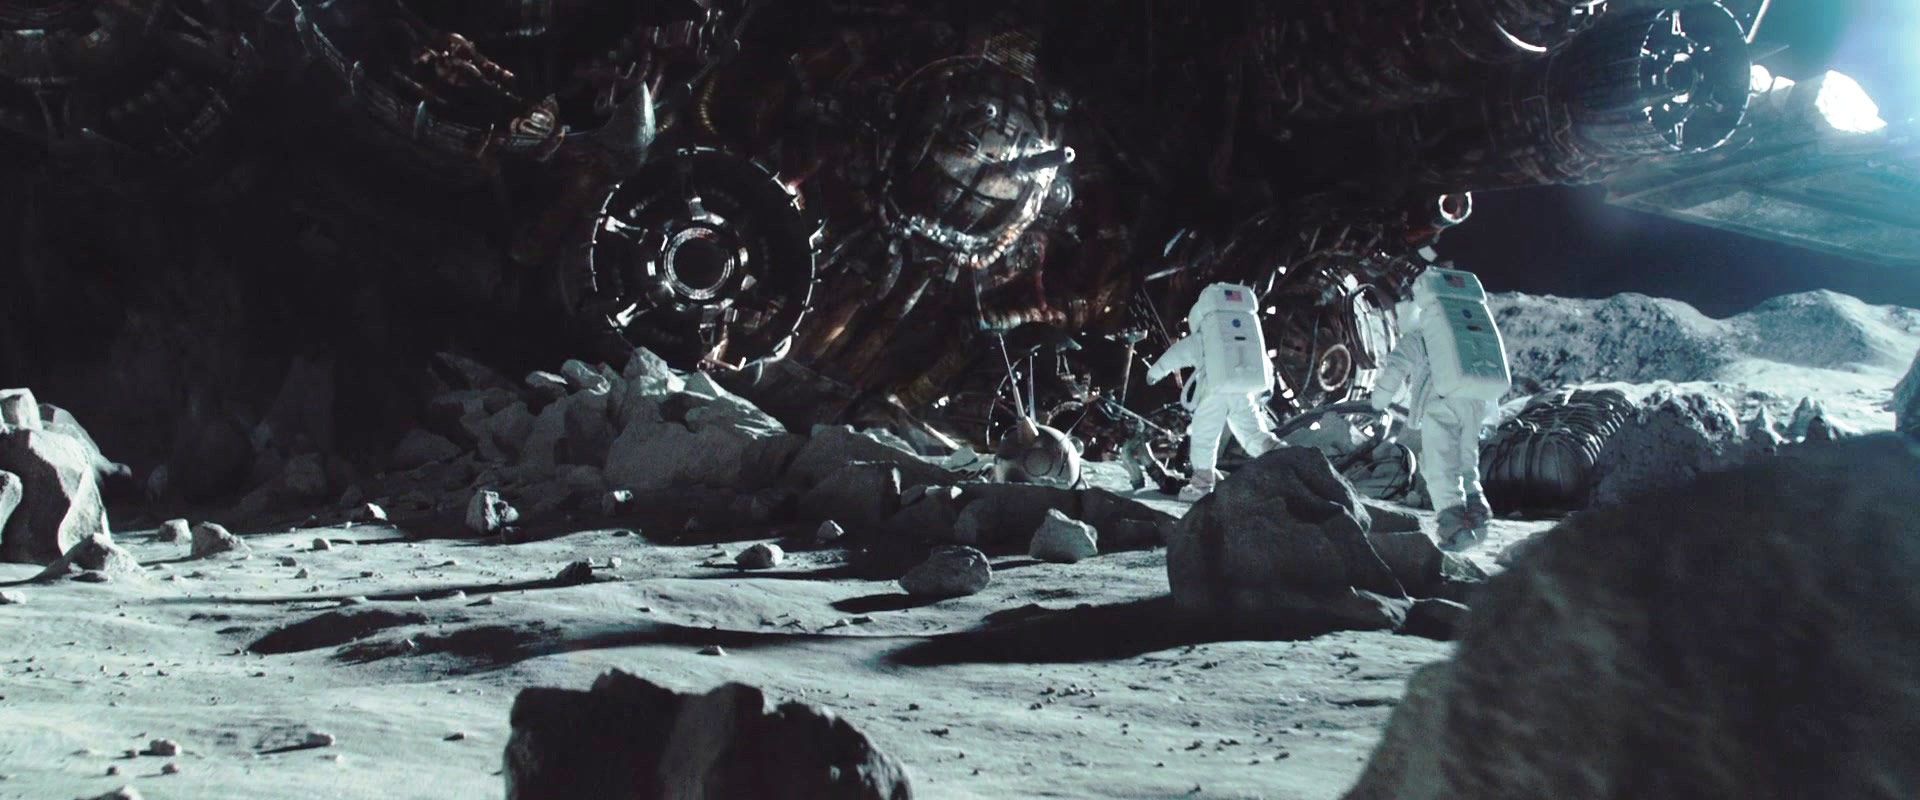 Трансформеры 3: Темная сторона Луны